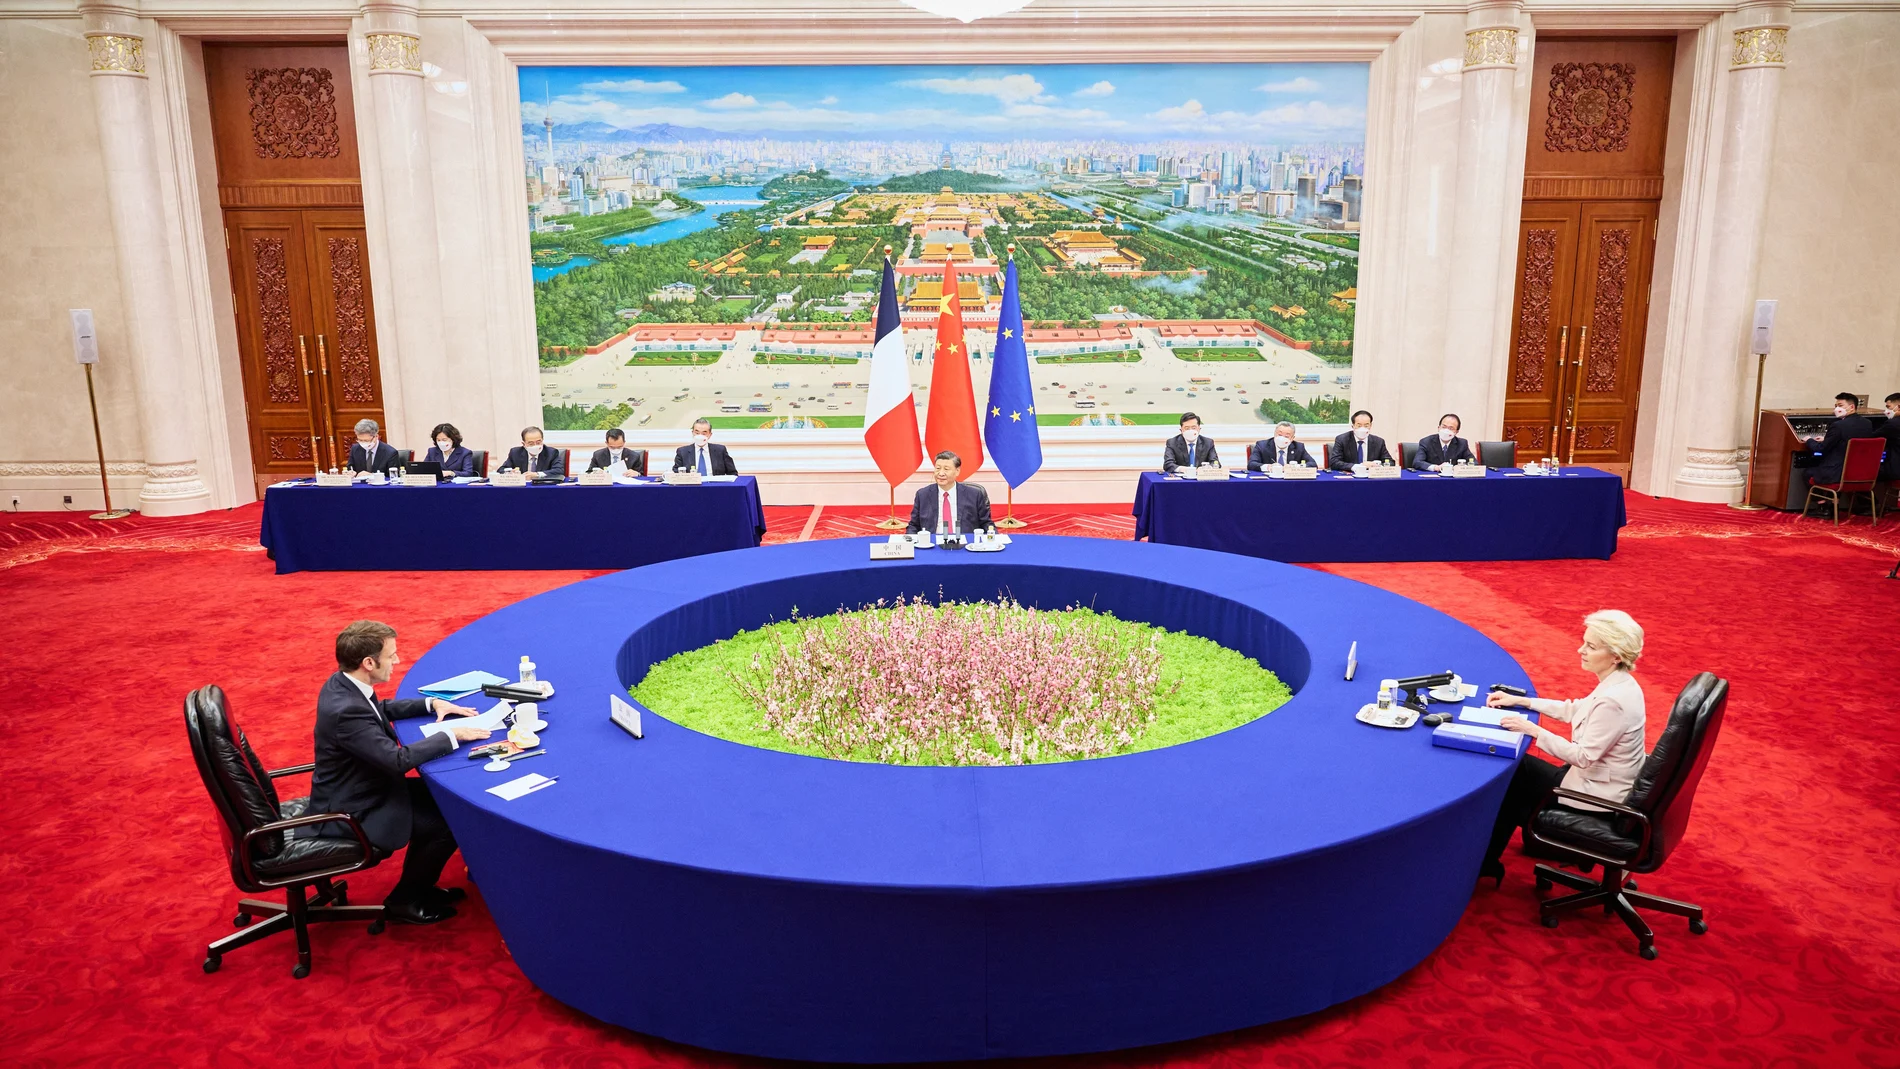 La reunión de Xi Jinping con Emmanuel Macron y Ursula von der Leyen